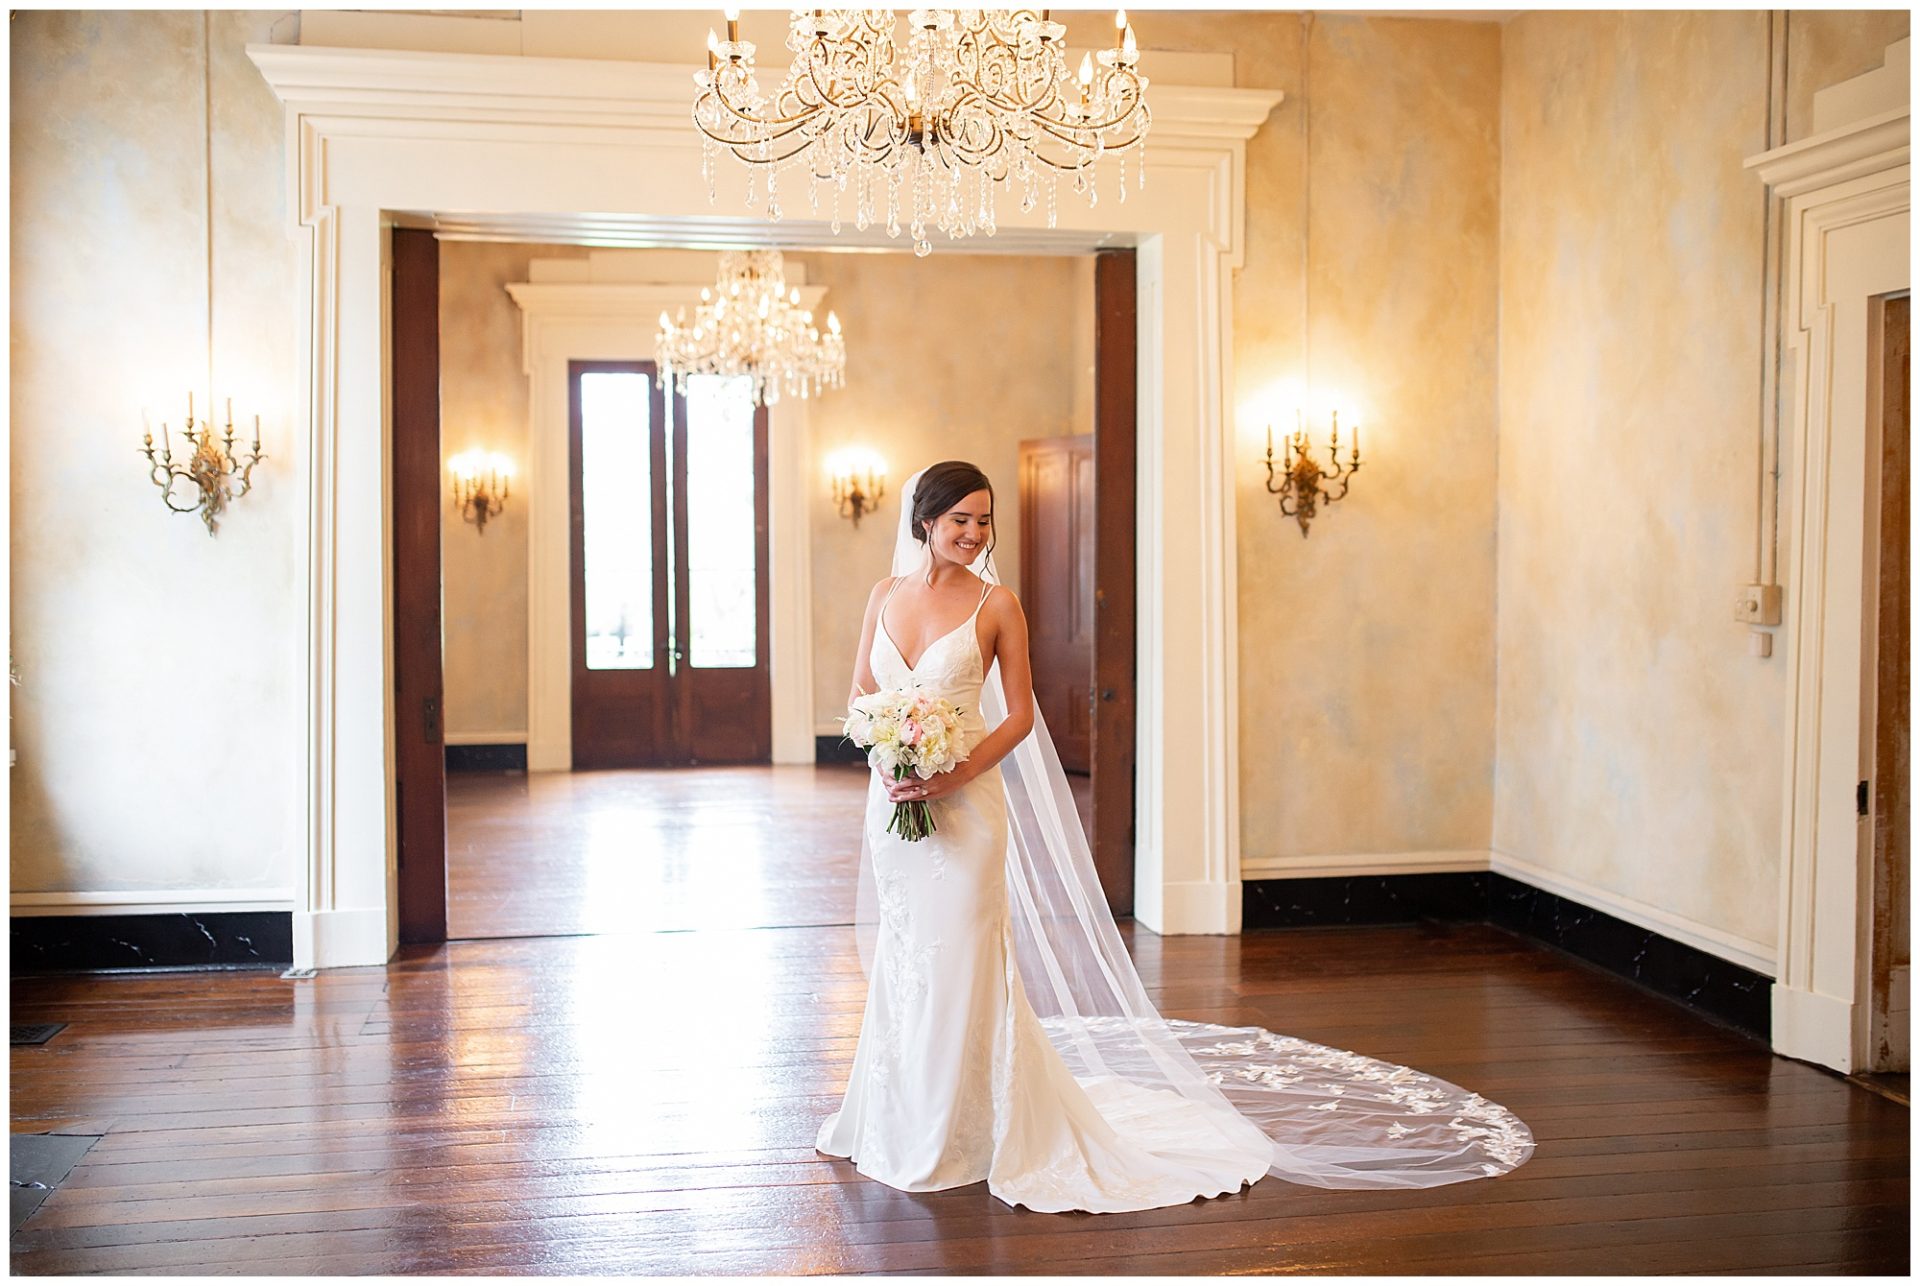 bridal portrait session at riverwood mansion in nashville, elegant and sophisticated bridal session